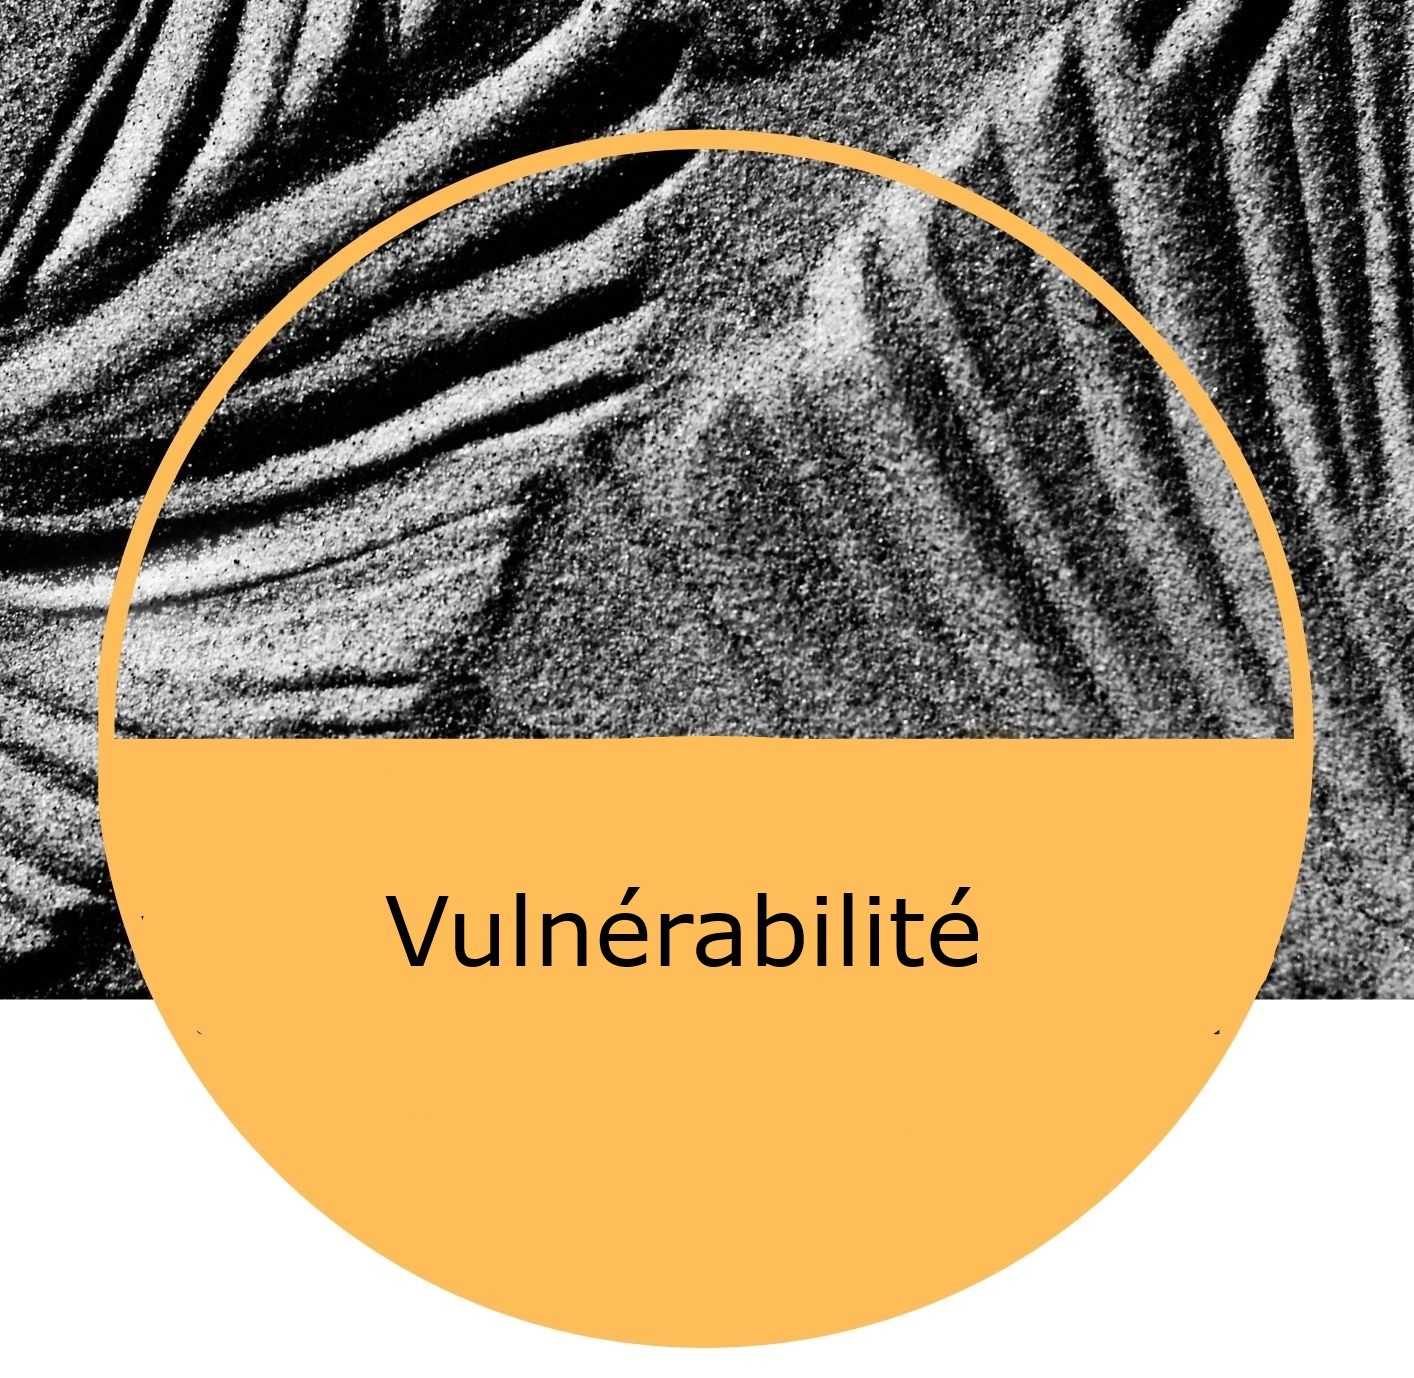 Image flyer vulnérabilité